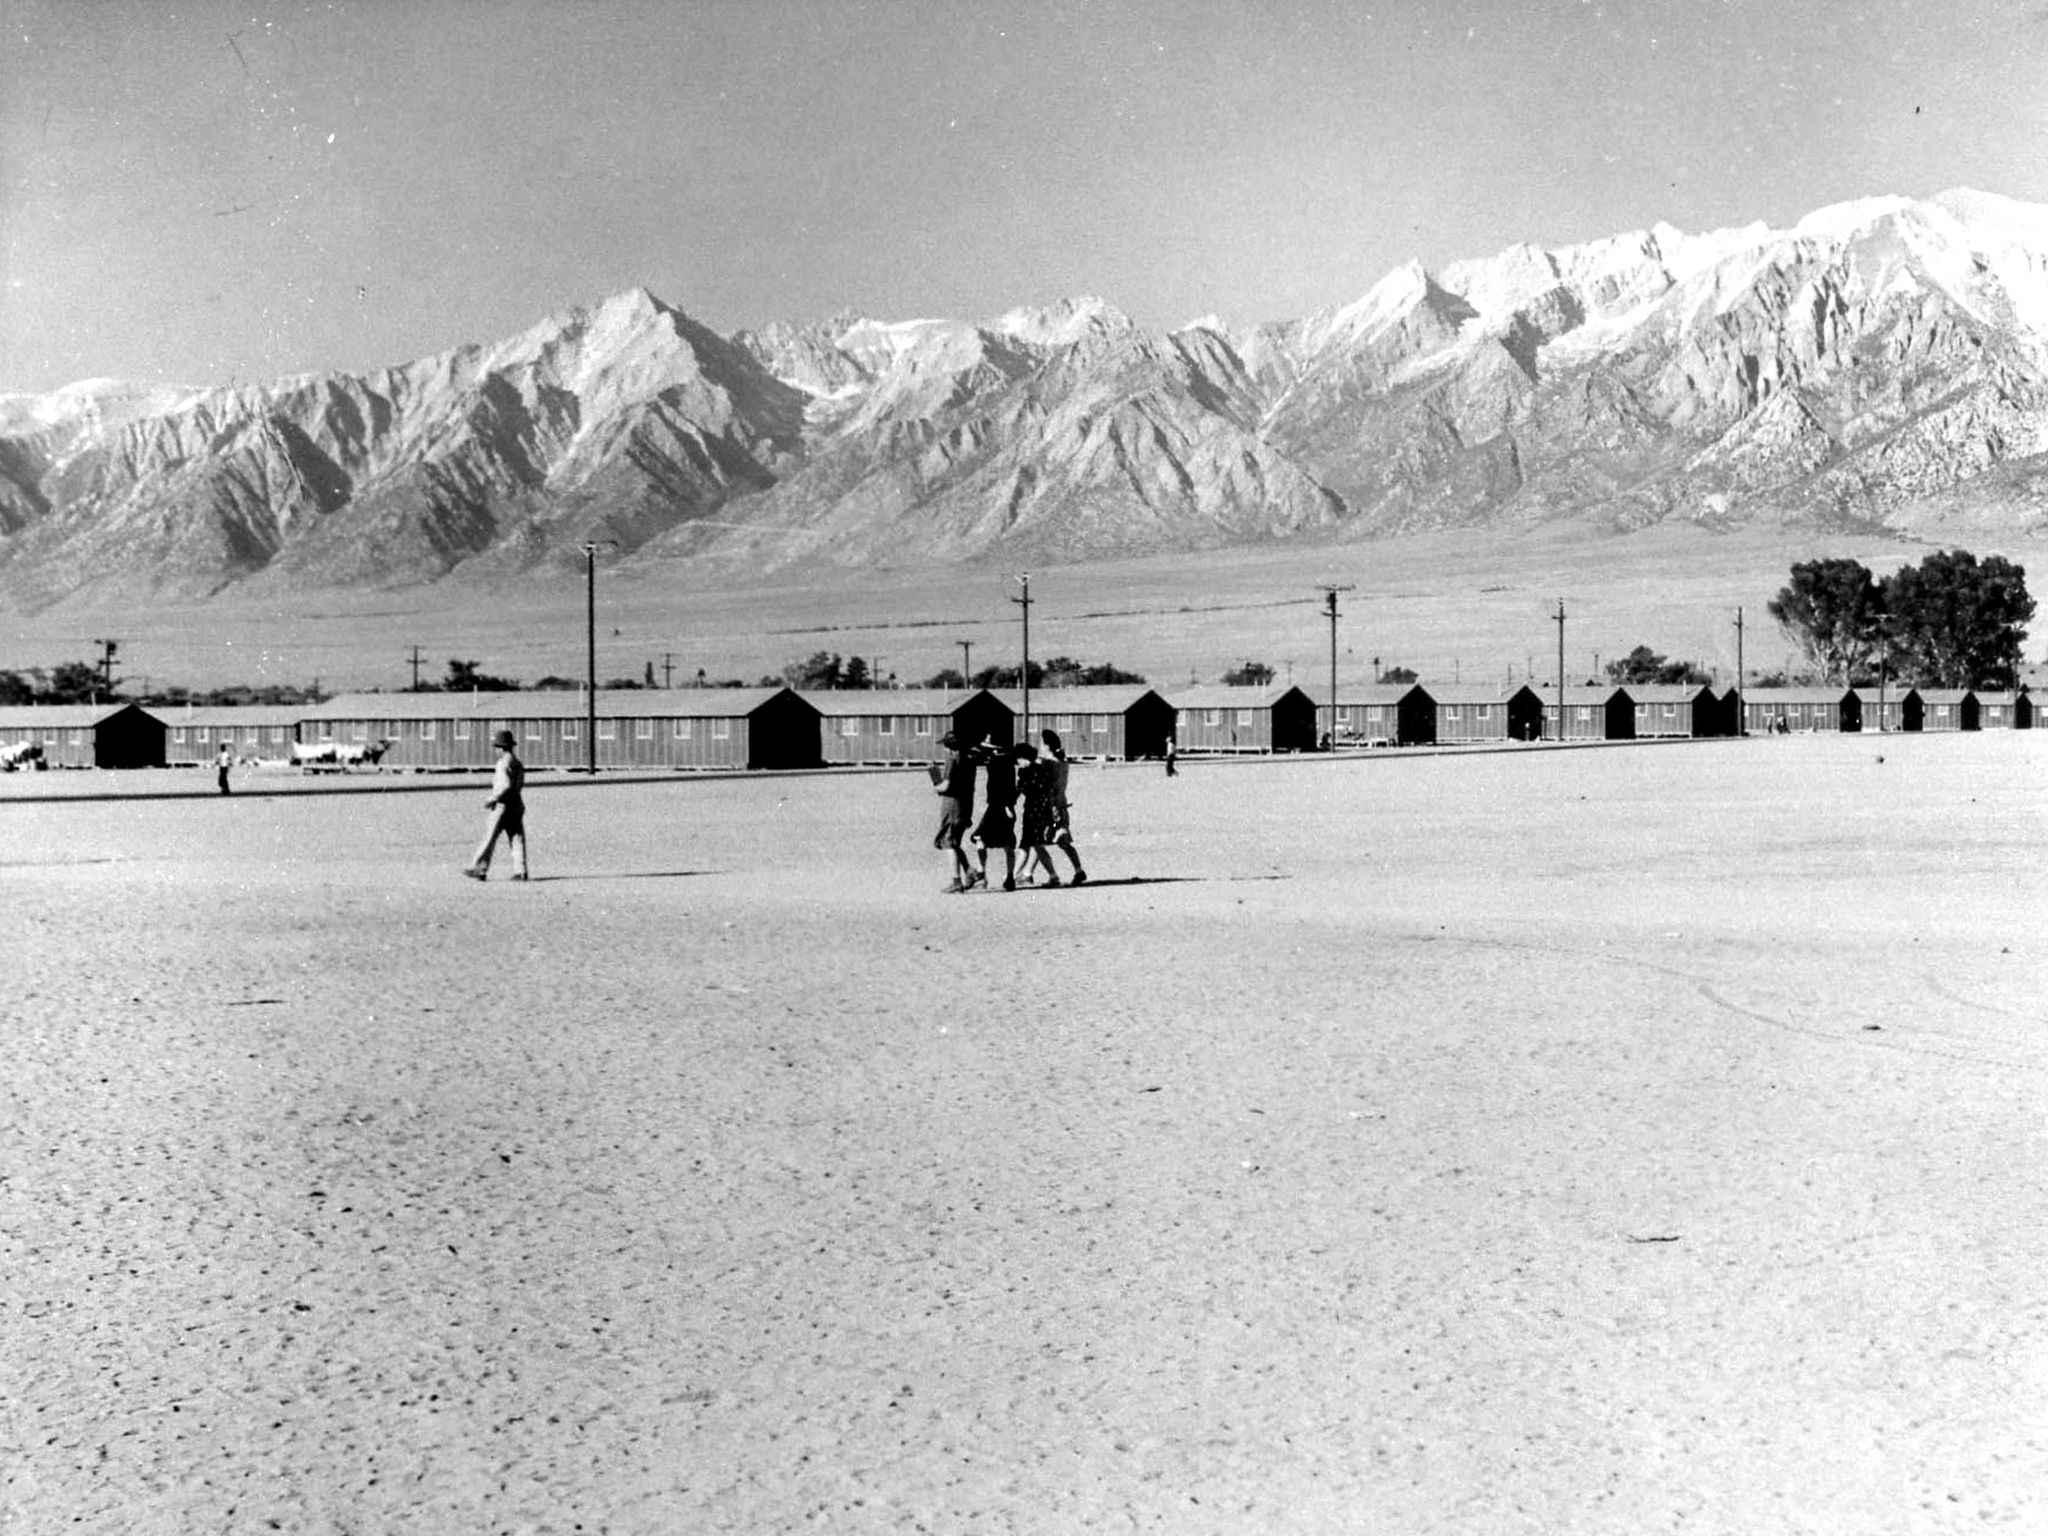 1942 image of barracks at Manzanar